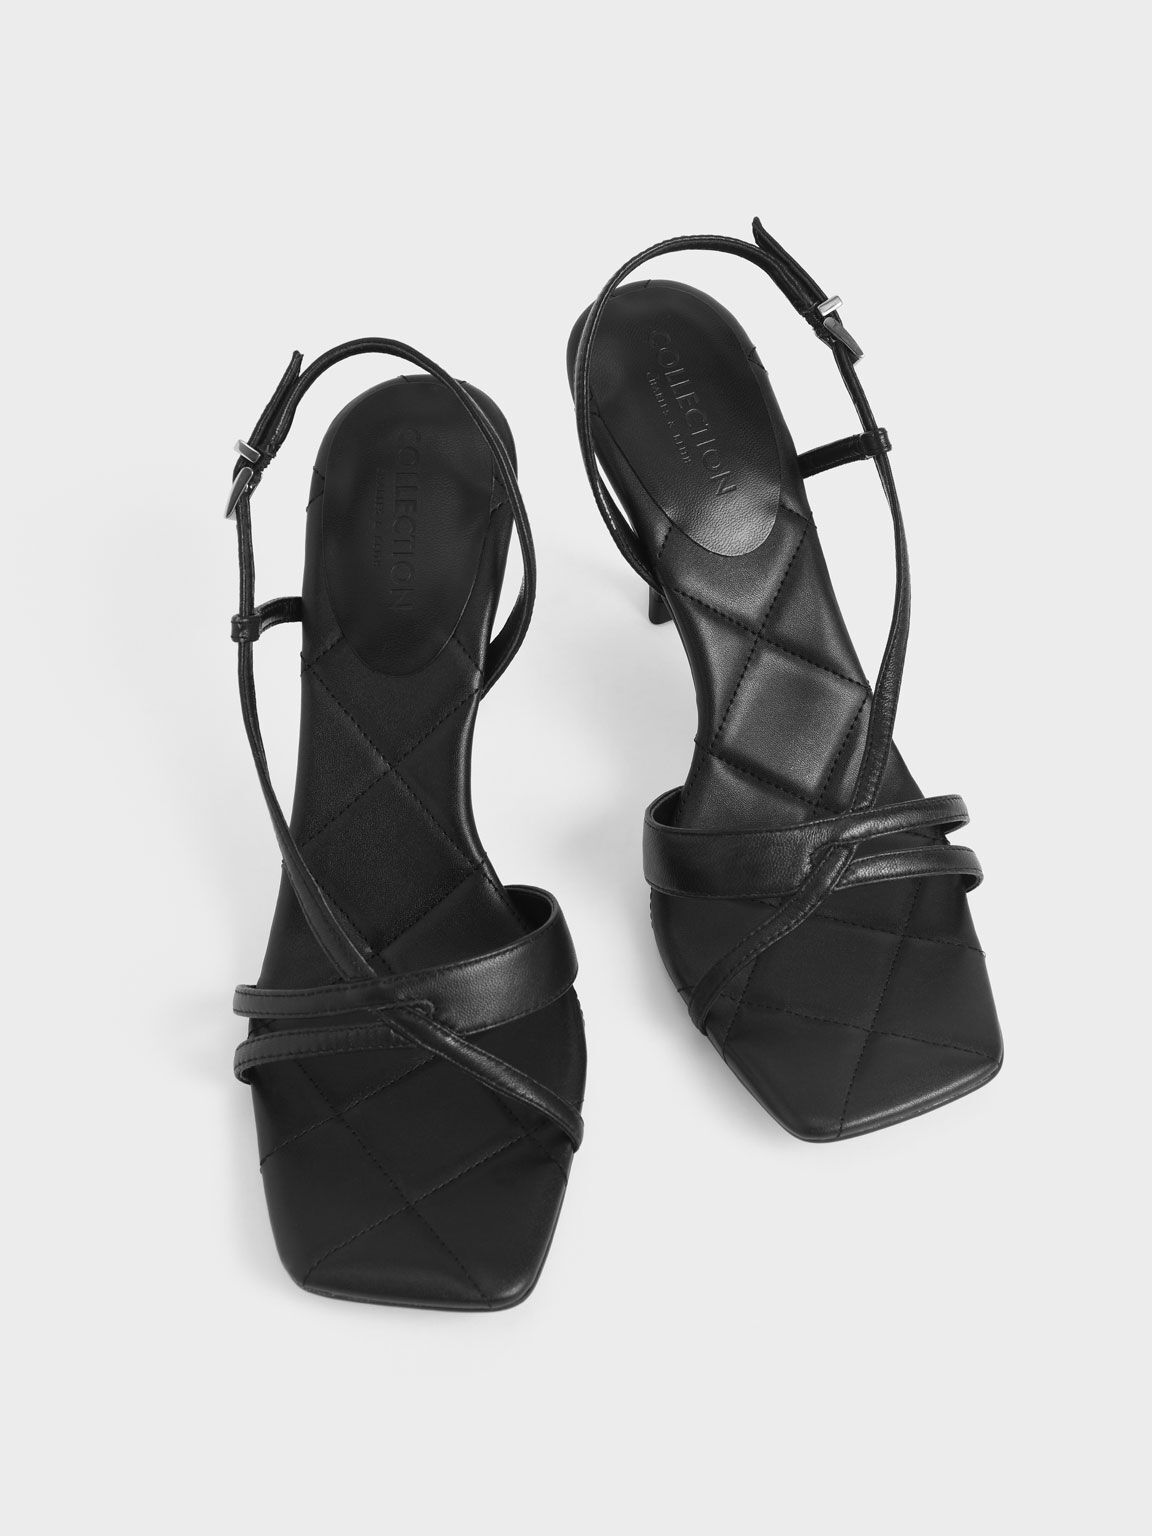 Leather Sculptural Heel Sandals, Black, hi-res